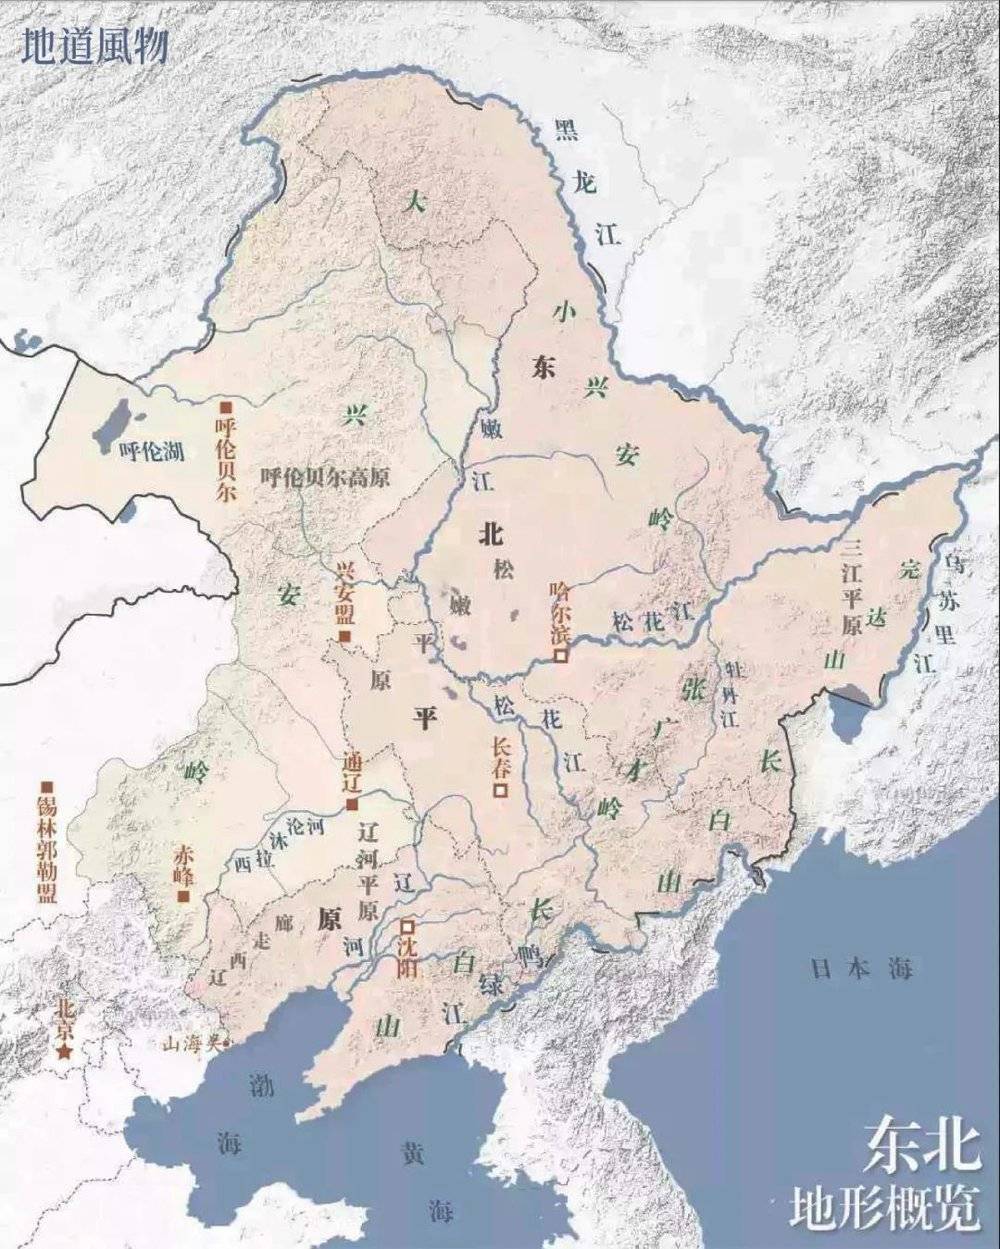 ▲ 东北地形图。东北地区除了东三省，还包括内蒙古东部的“三市一盟”。本文描述范围主要为黑、吉、辽三省。制图/F50BB<br>